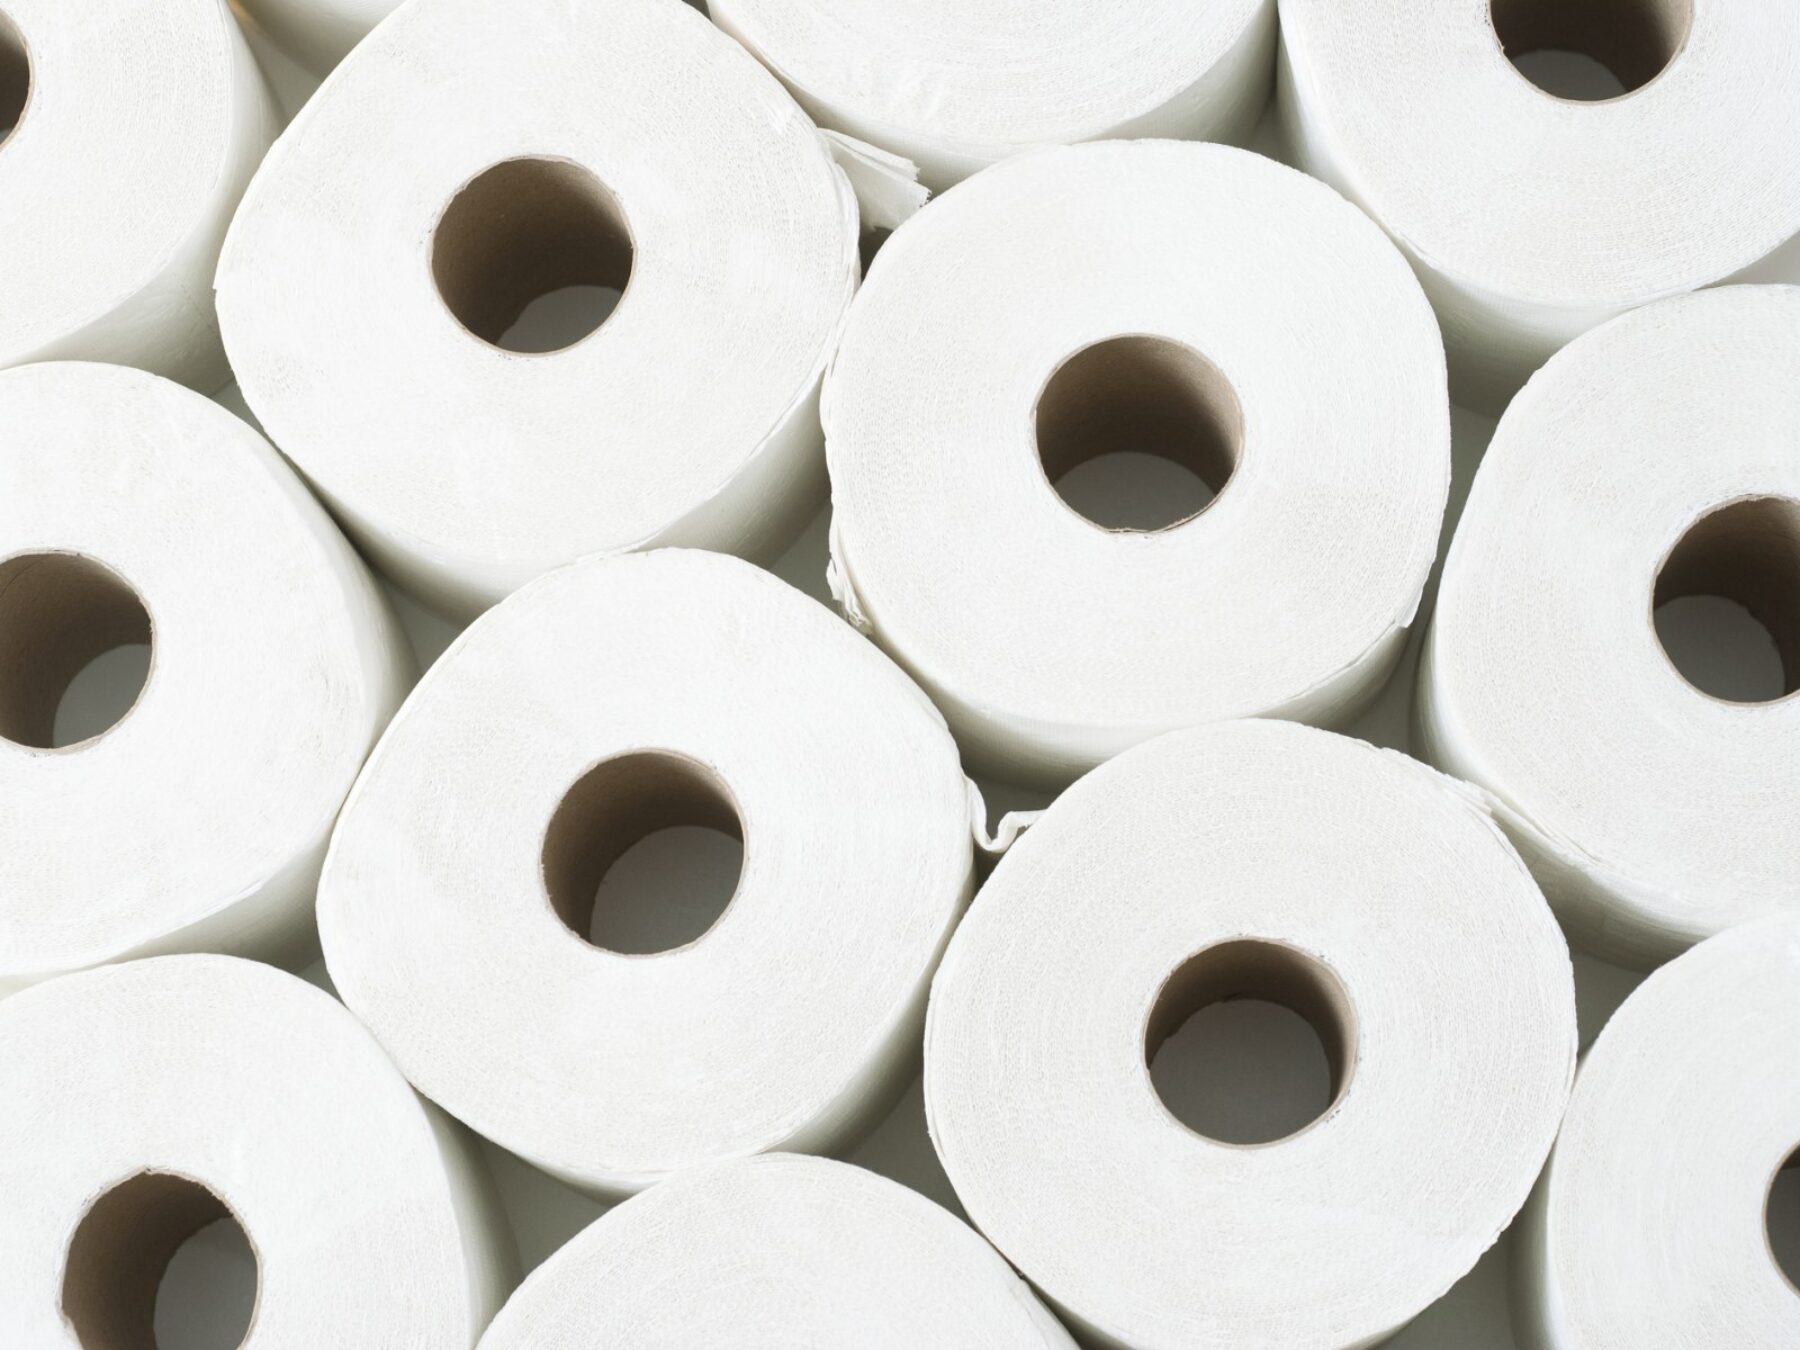 Top view of twelve rolls of toilet paper